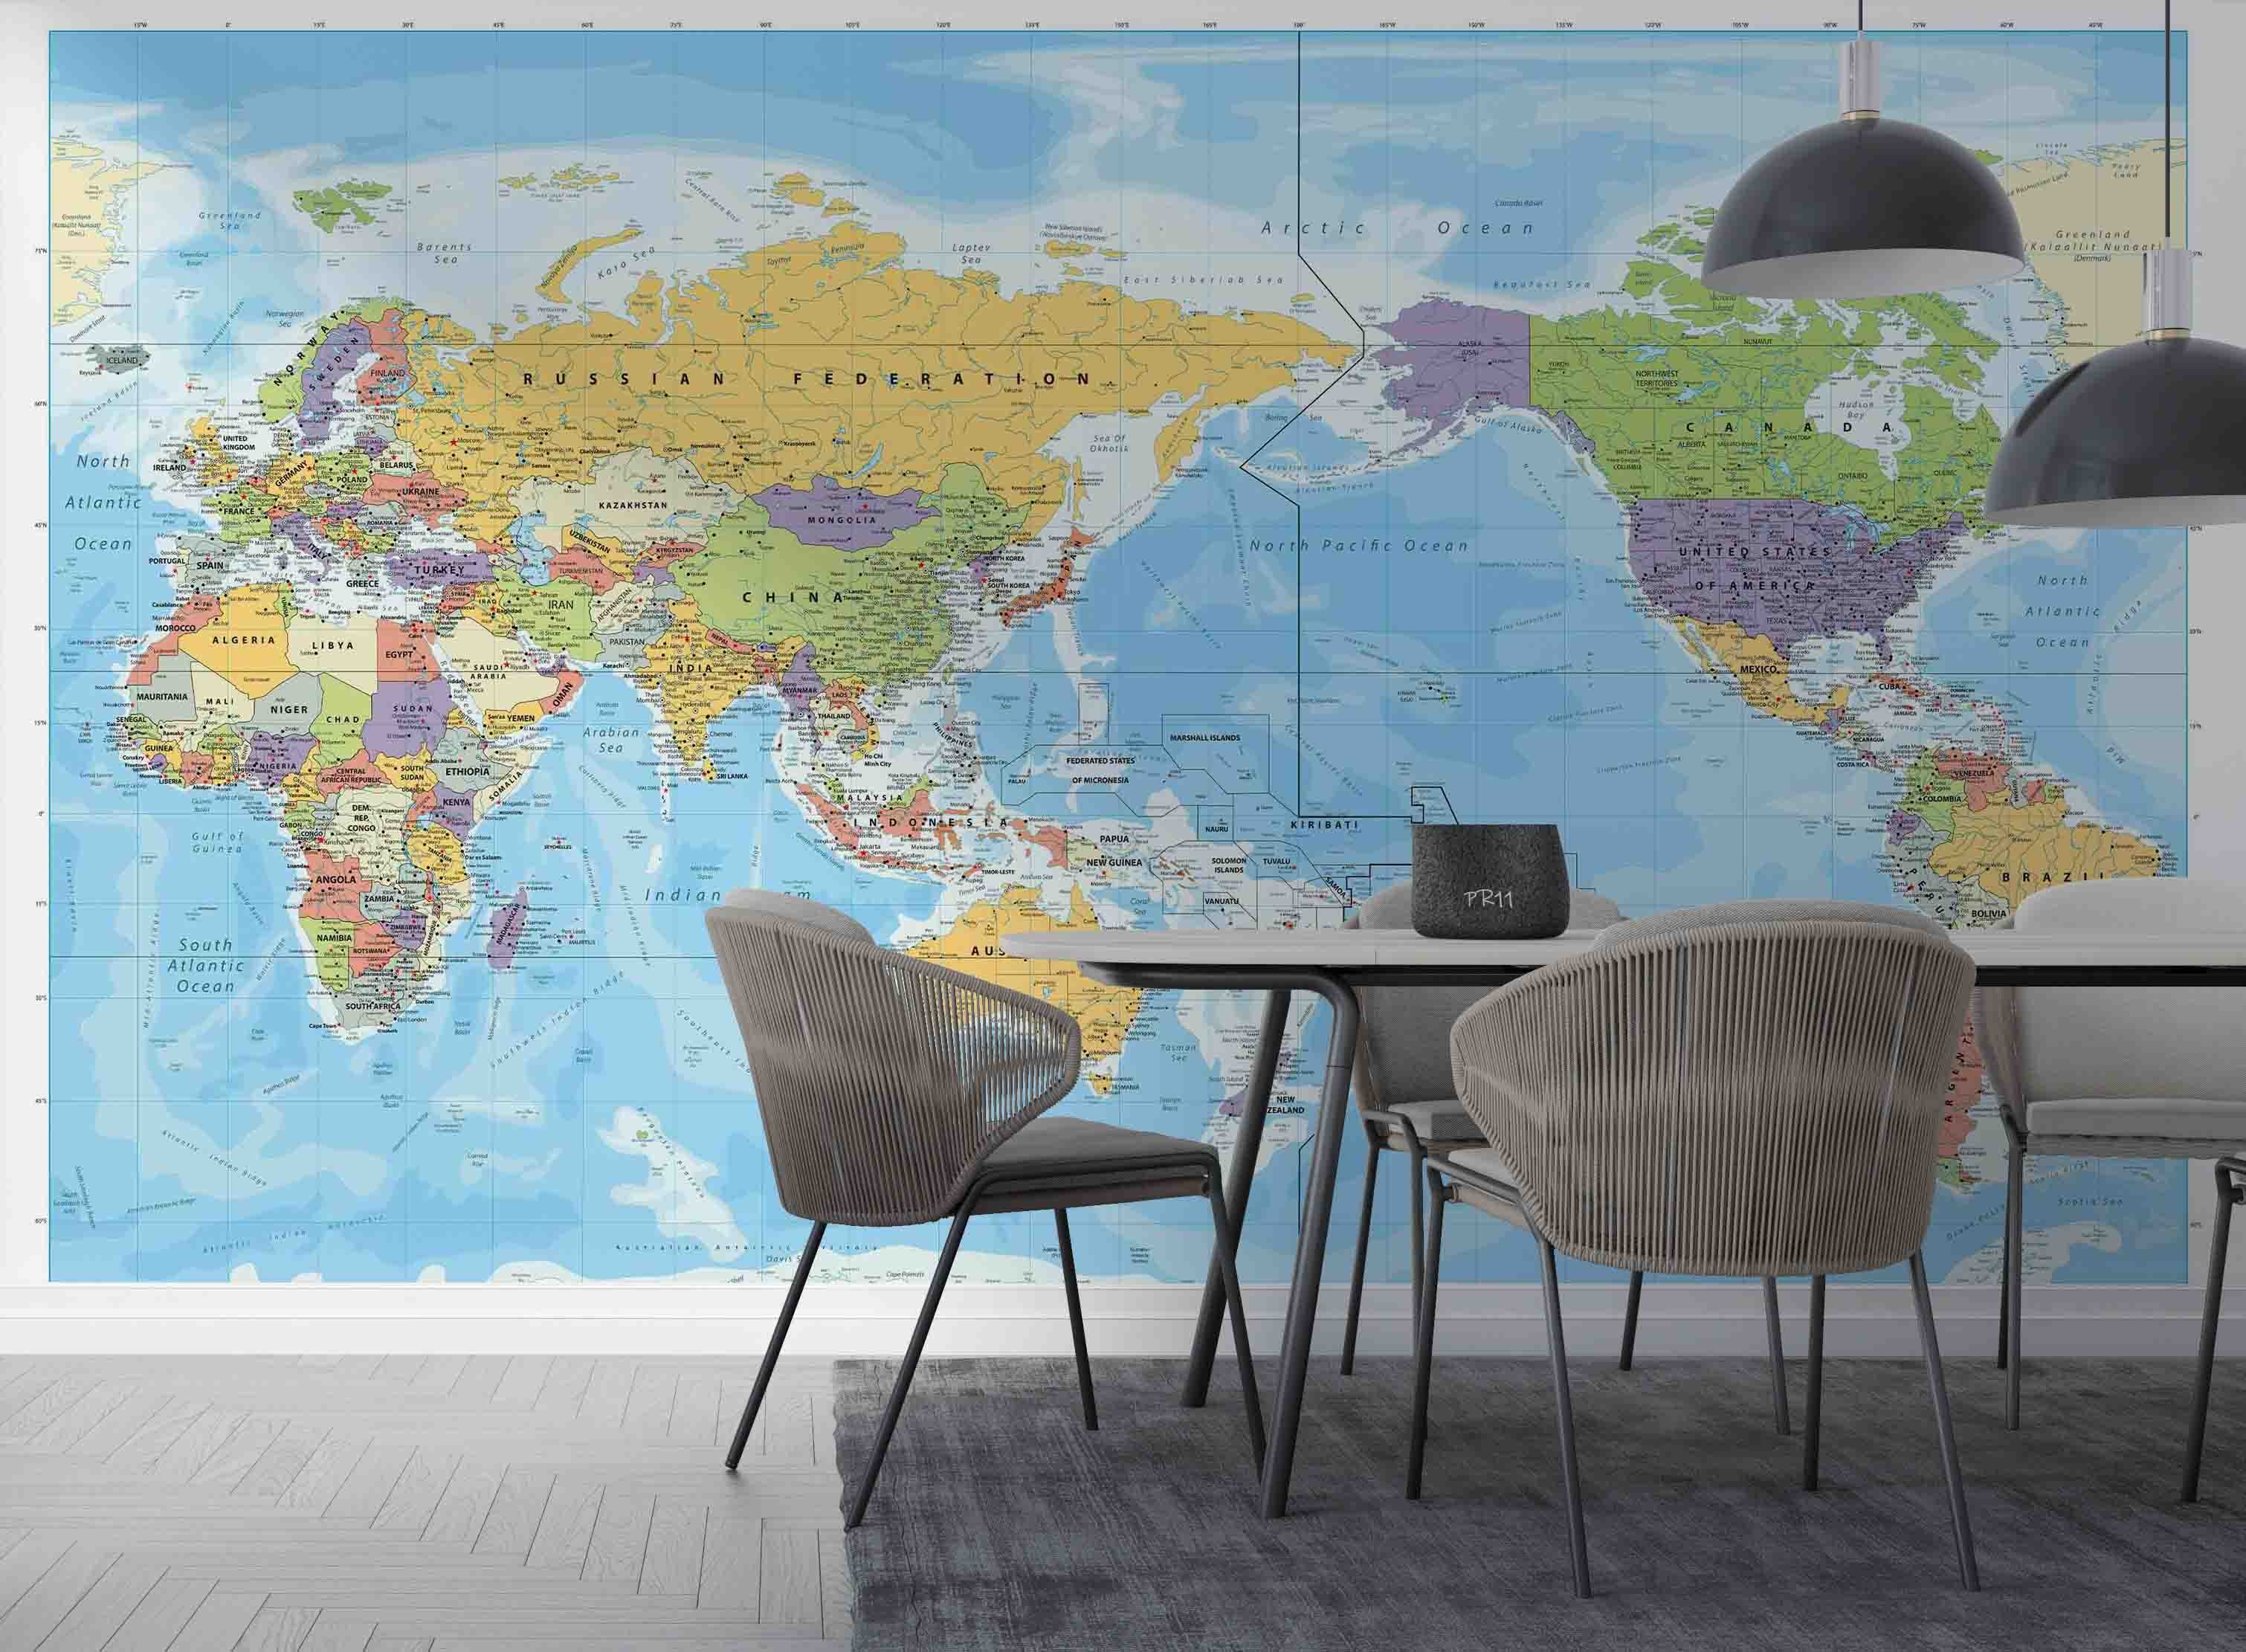 3D Detailed World Map Wall Mural Wallpaper GD 4927- Jess Art Decoration